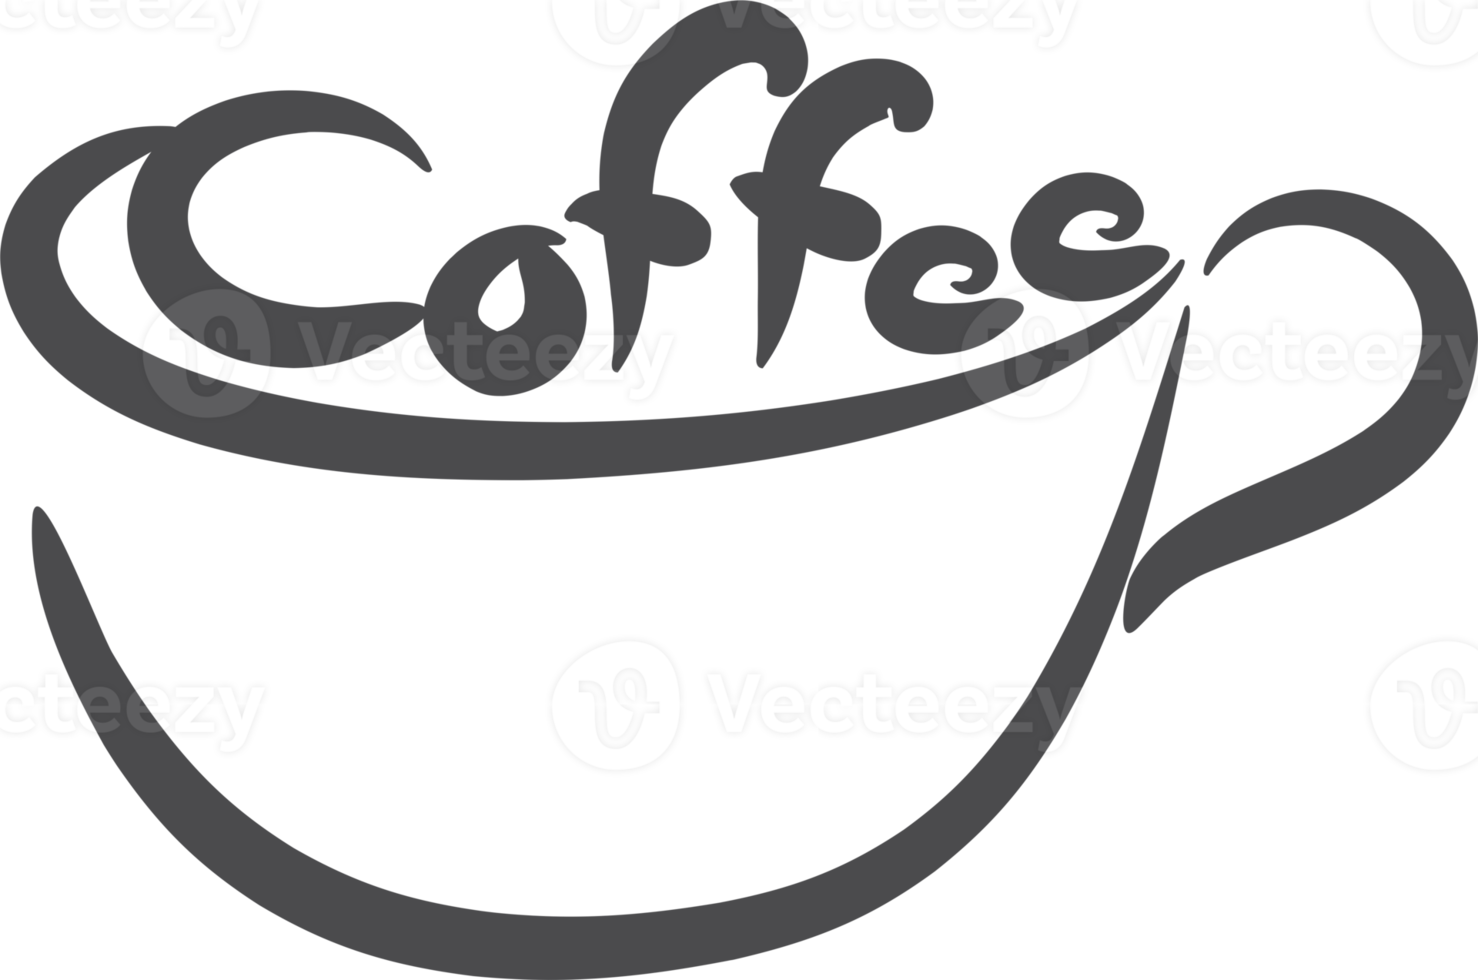 Kaffee Tasse Logo Element png